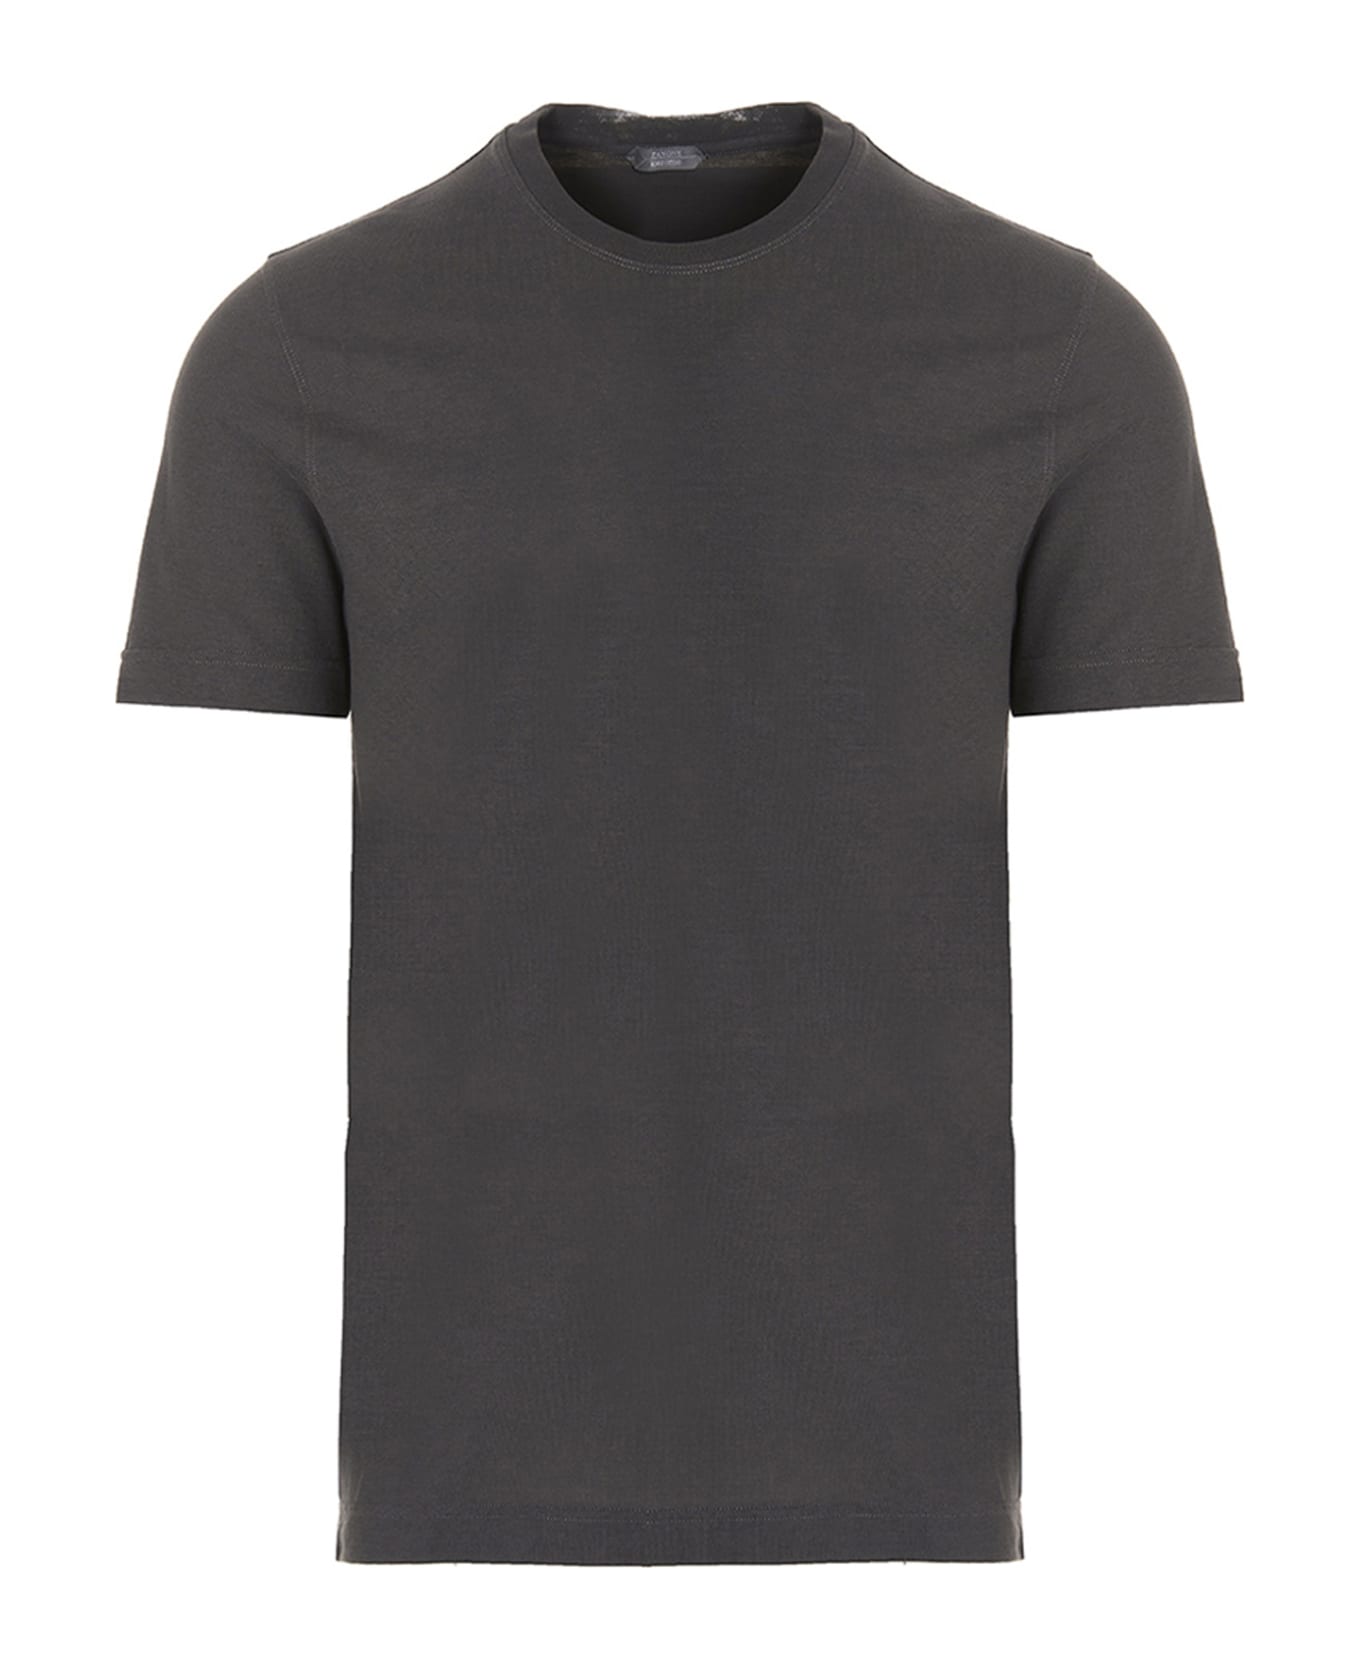 Zanone Ice Cotton T-shirt - Gray